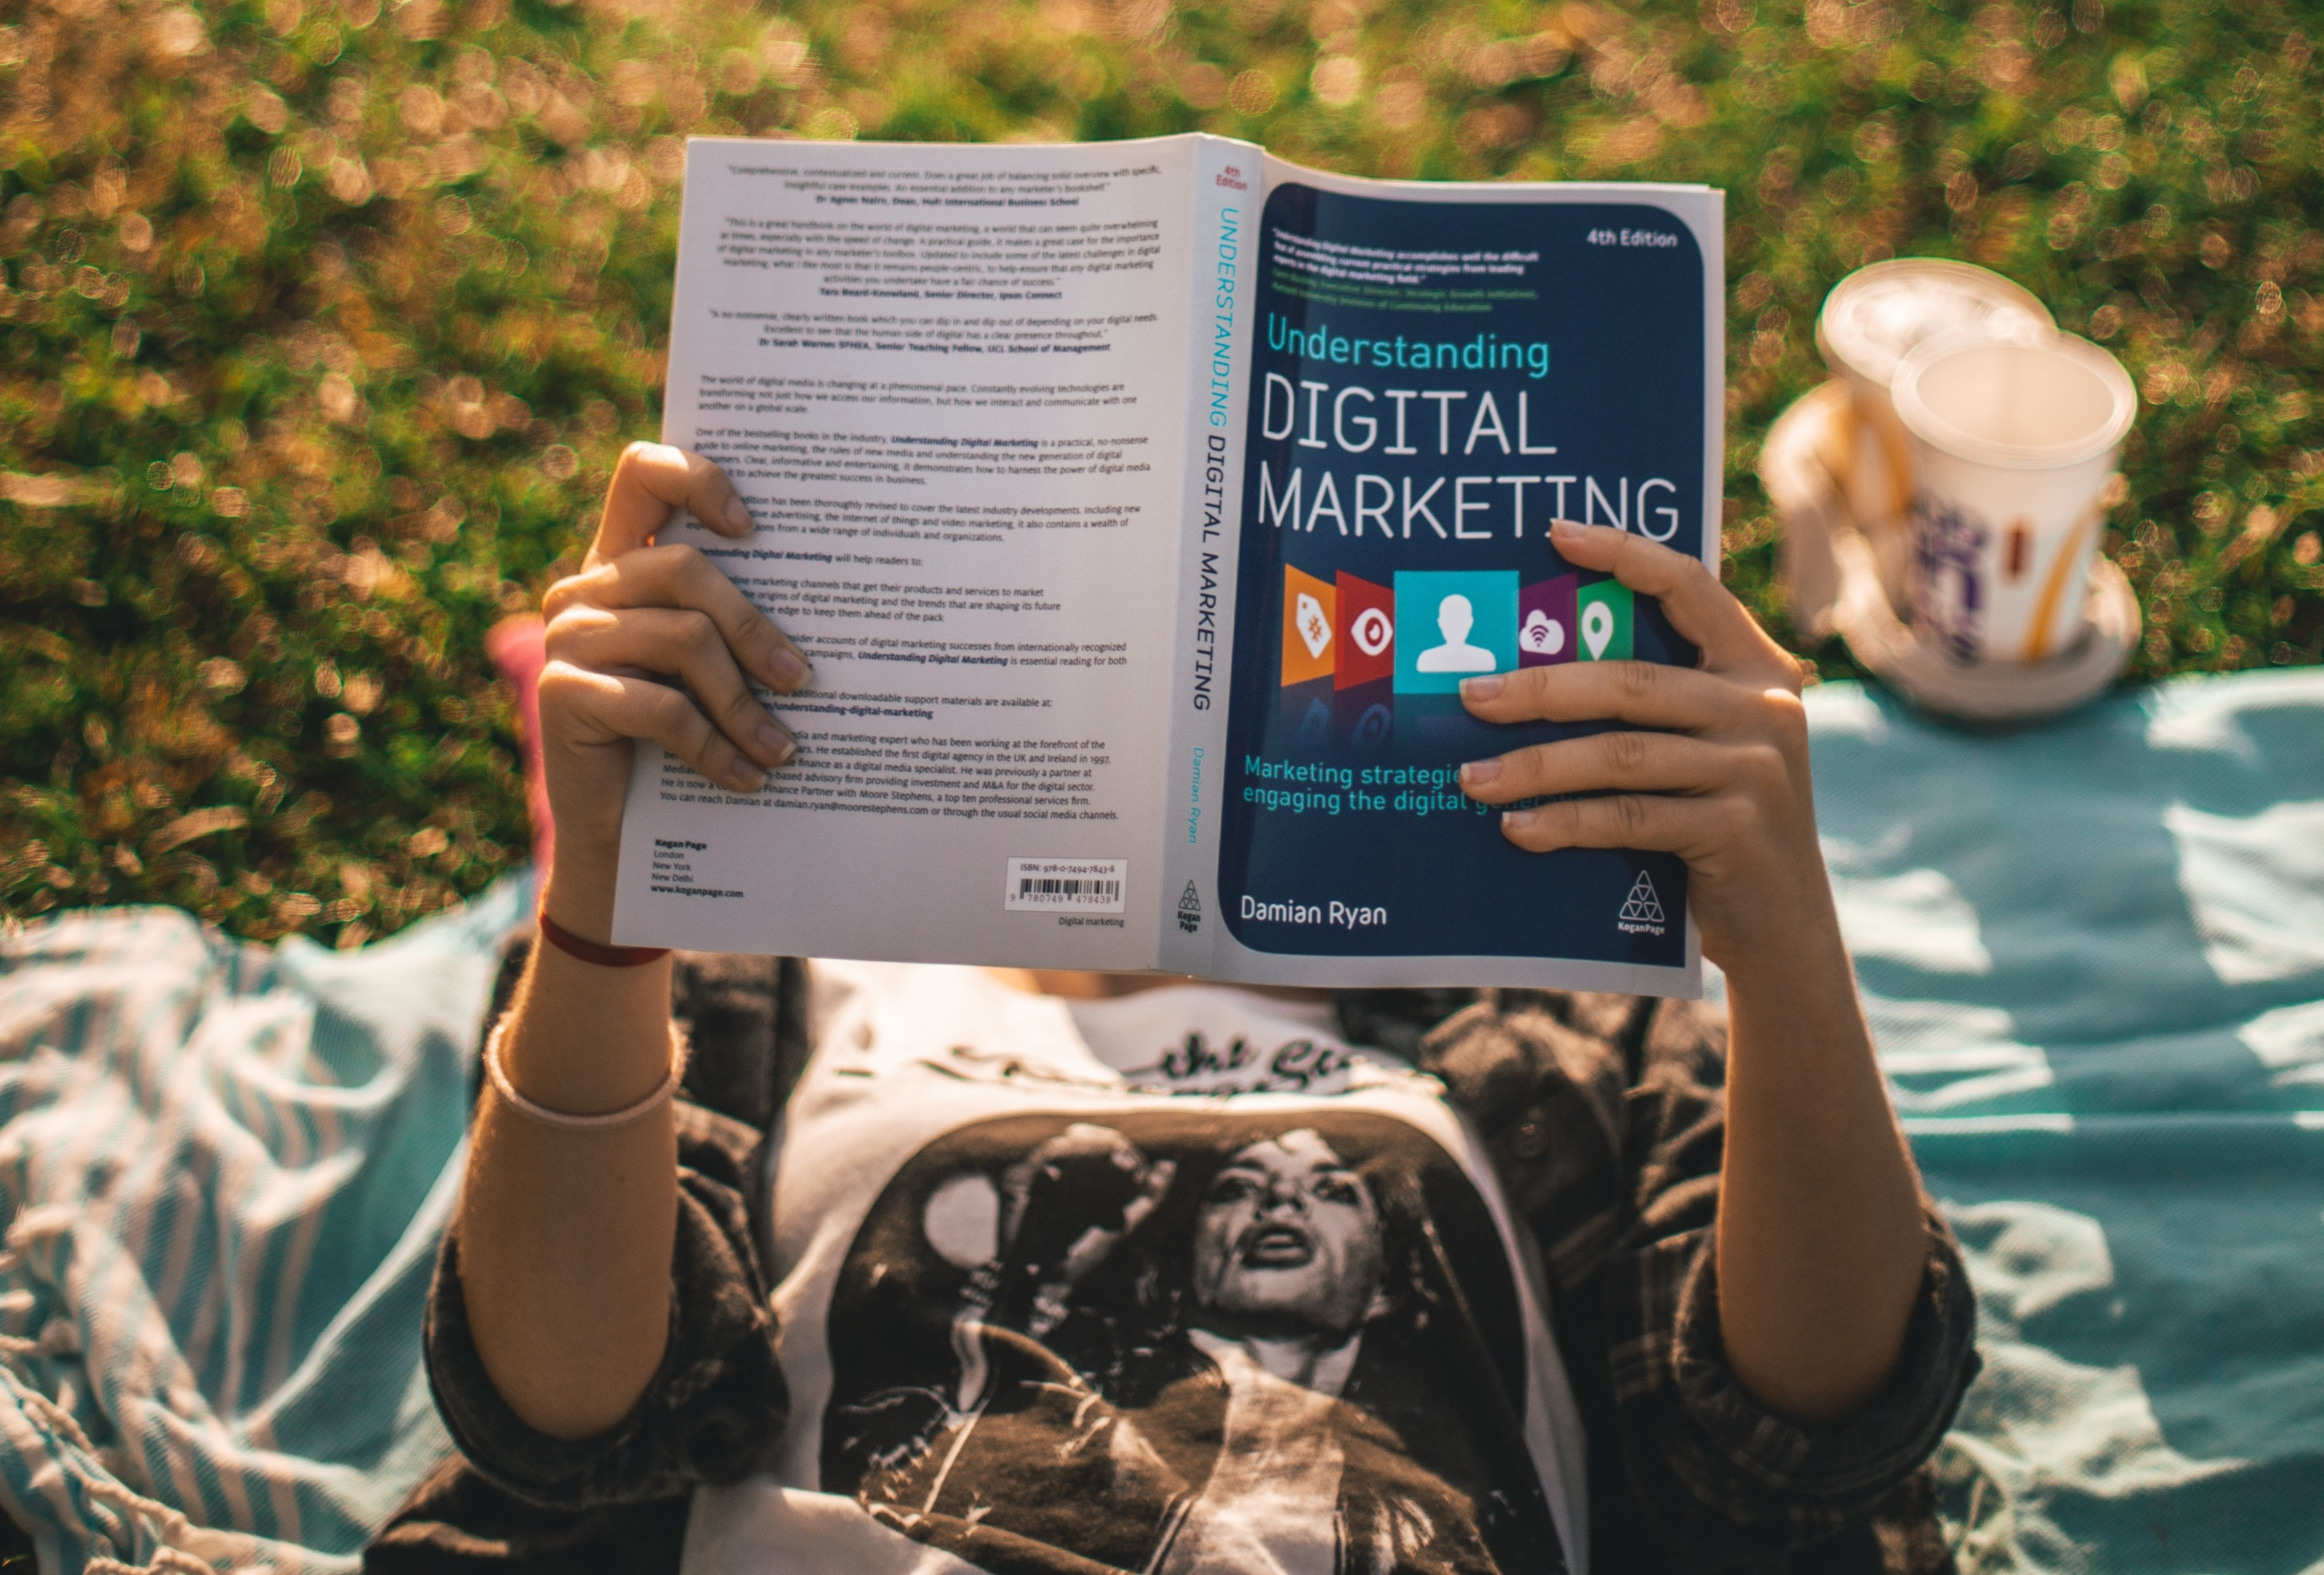 Une jeune femme, allongée sur du gazon, lit un livre sur le marketing digitale. Le marché de la publicité classique et digitale sont toujours en plein expansion. La publicité digitale est importante pour la promotion des marques